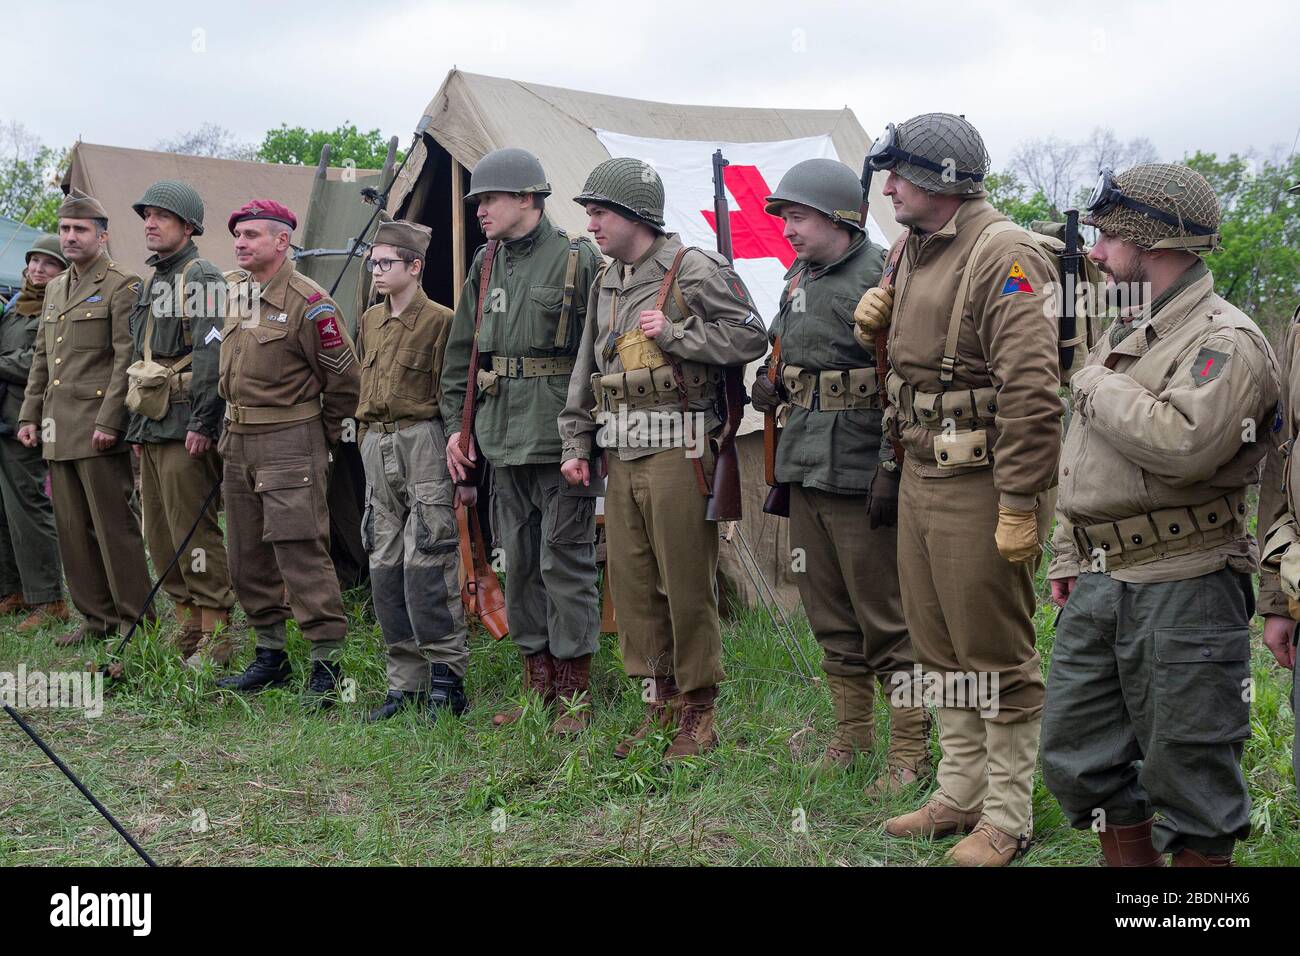 Kiev, Ucraina - 9 maggio 2019: Mans sotto forma di soldato dell'esercito americano della seconda guerra mondiale su una ricostruzione storica in occasione dell'anniversario Foto Stock